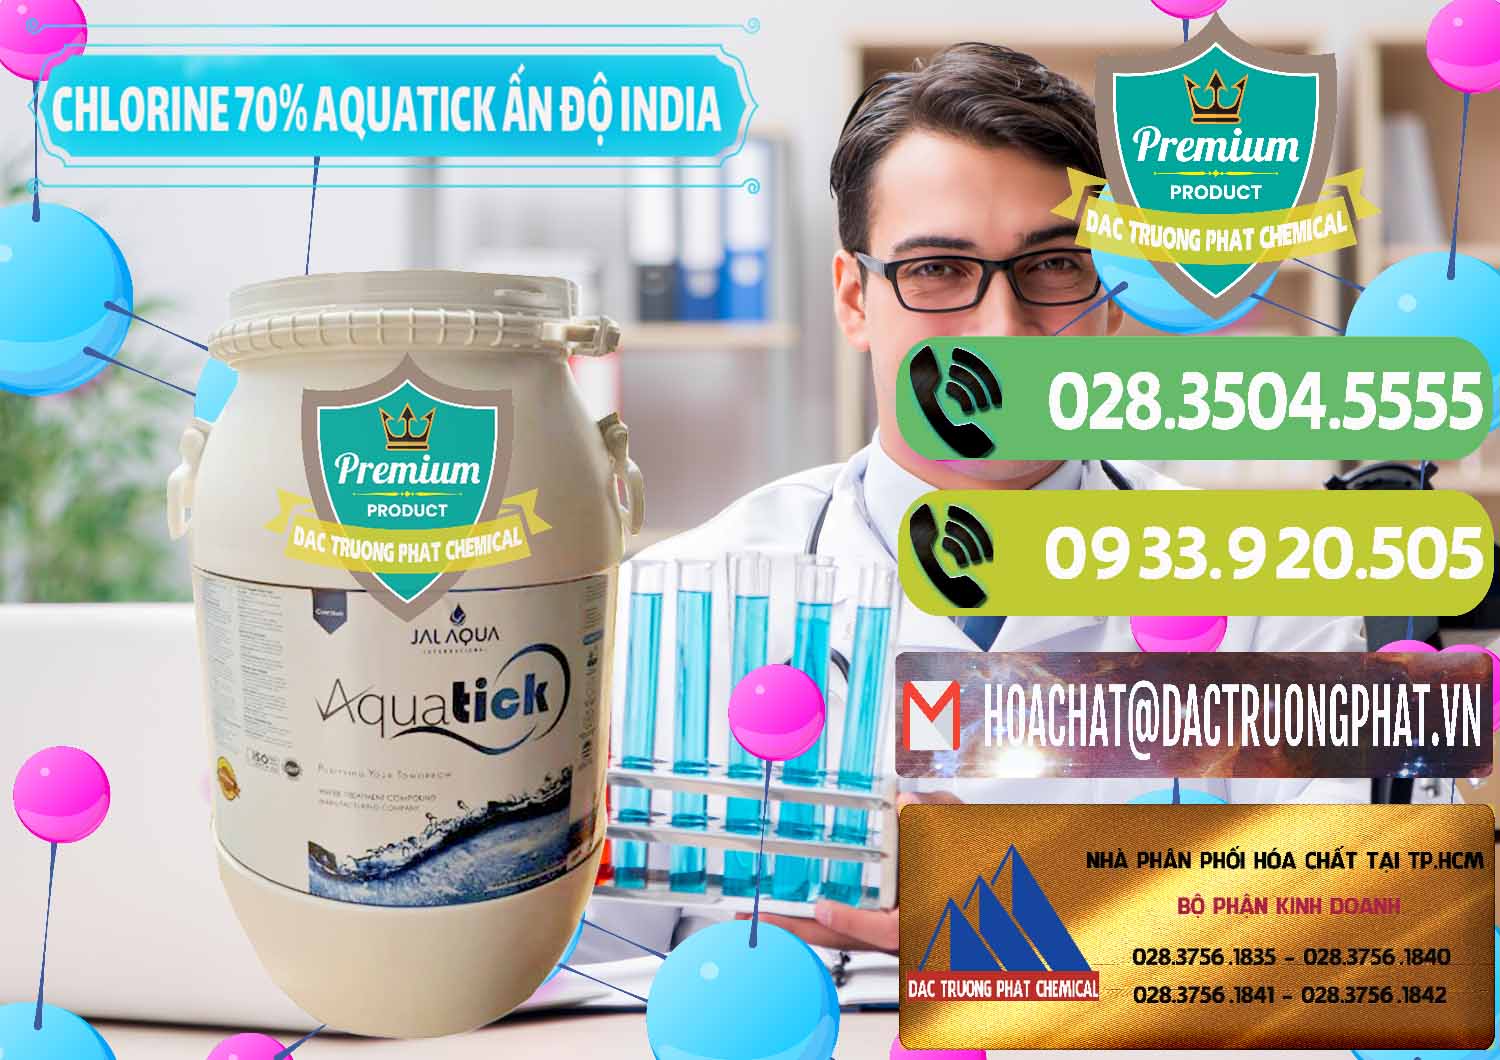 Cty kinh doanh - bán Chlorine – Clorin 70% Aquatick Jal Aqua Ấn Độ India - 0215 - Nhà phân phối và kinh doanh hóa chất tại TP.HCM - hoachatmientay.vn